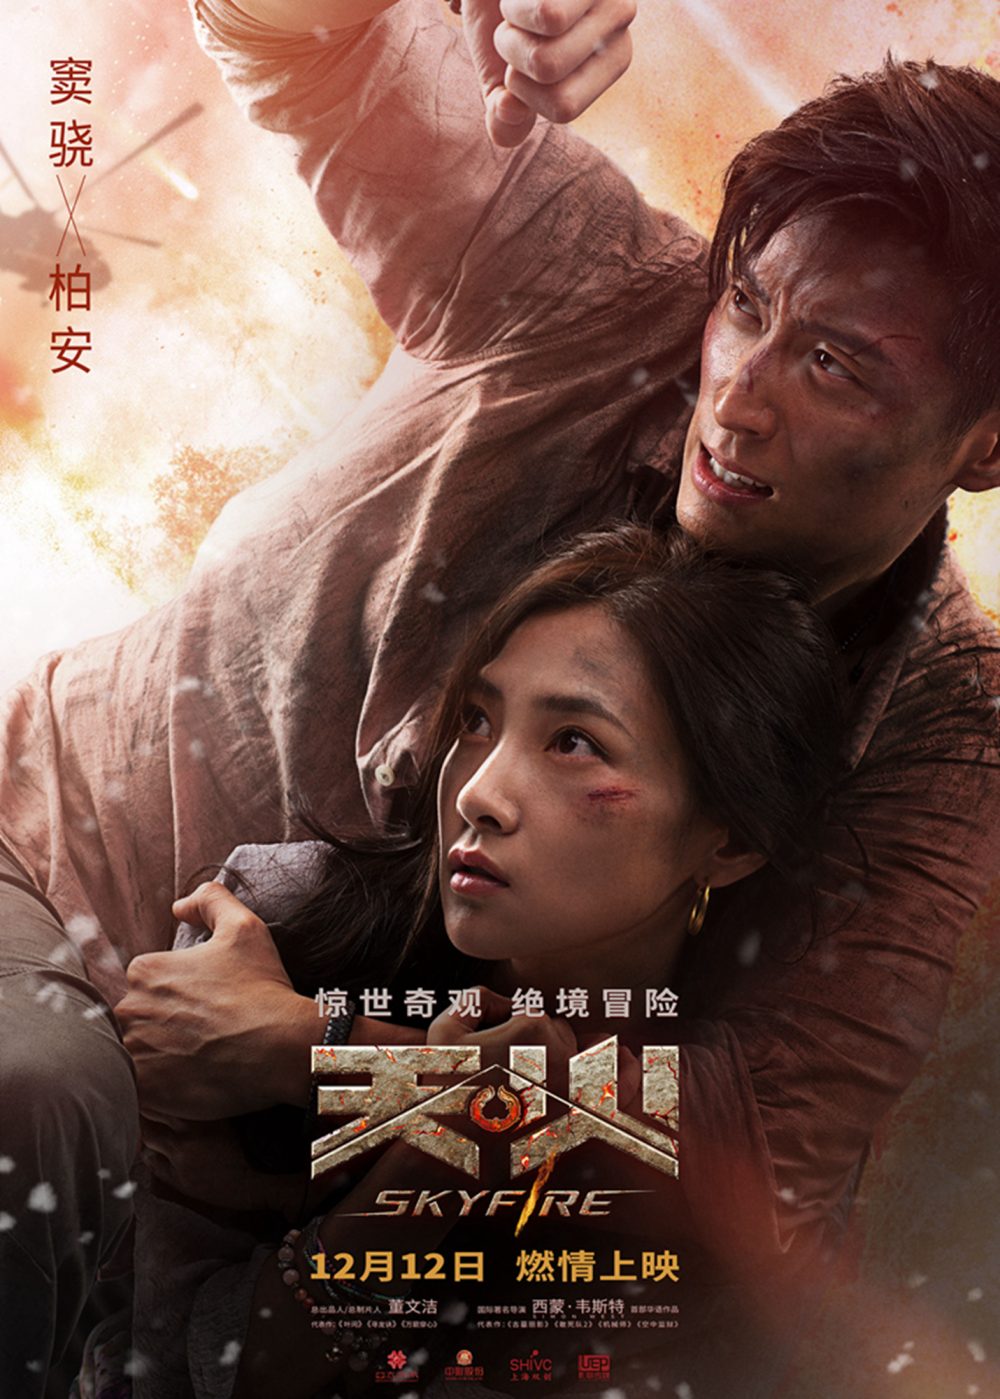 Phim Trung Quốc nói về lính cứu hỏa: Lửa trời - Skyfire (2019)